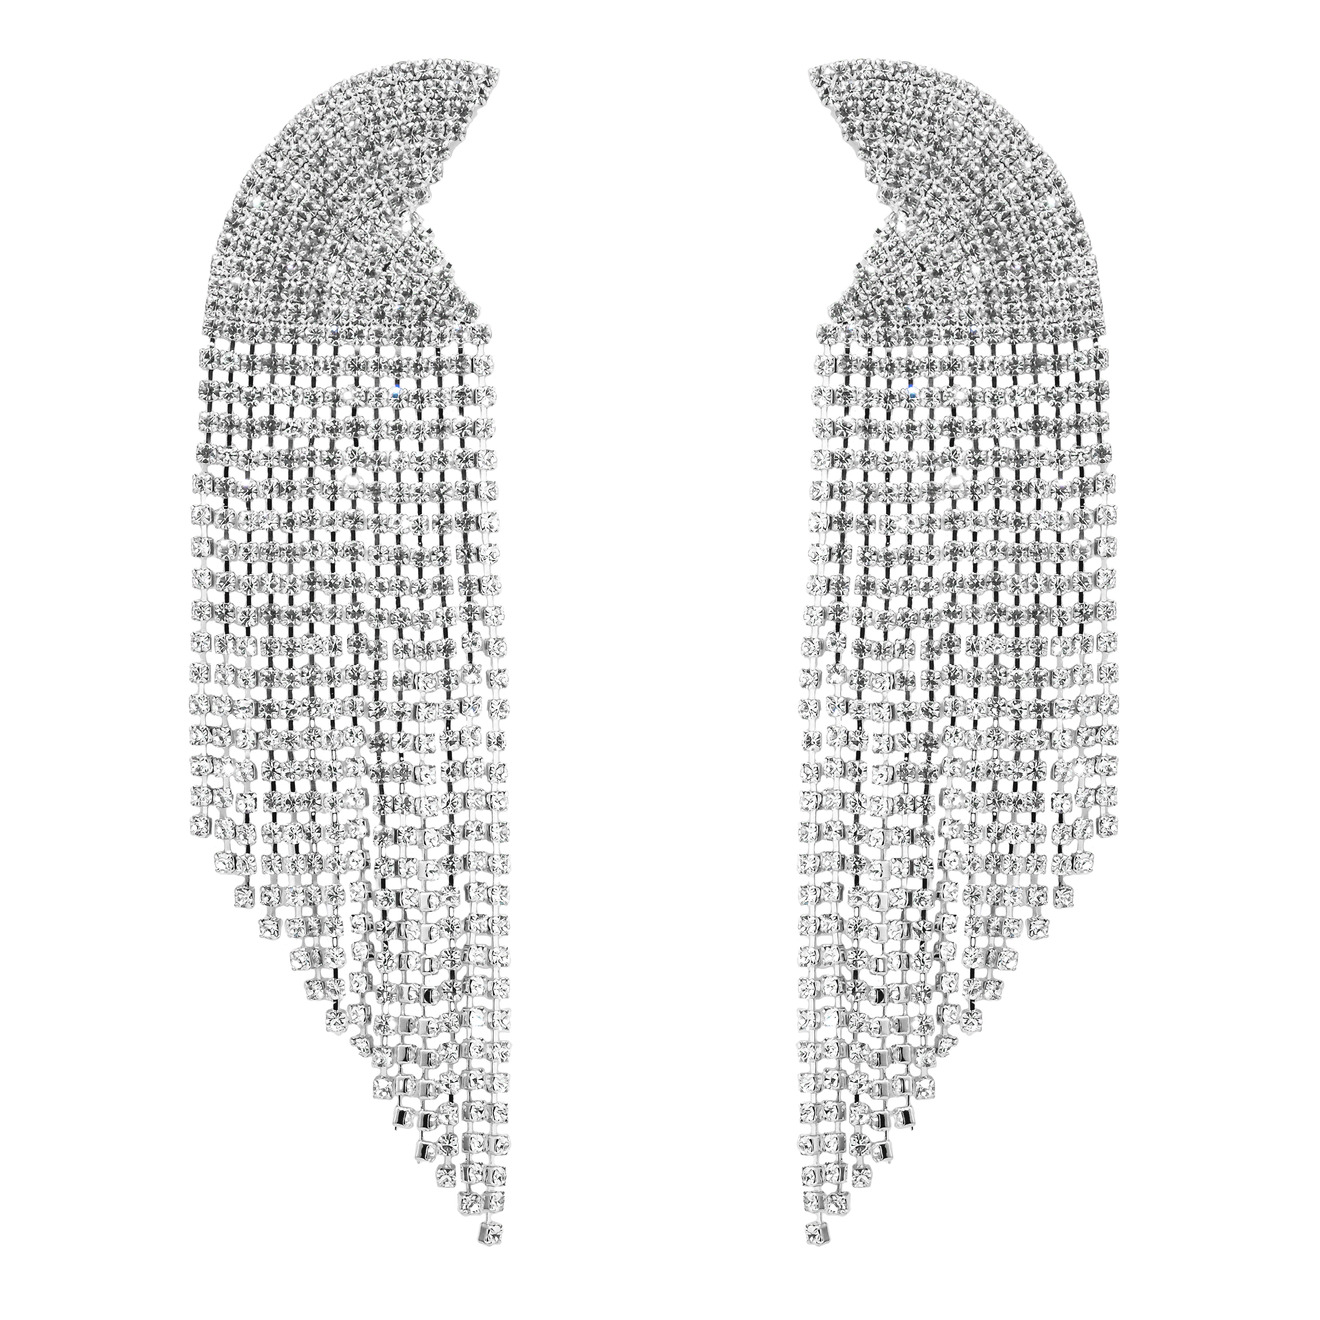 Herald Percy Серебристые серьги-полукруги с кристаллами herald percy серебристые серьги крестики с кристаллами